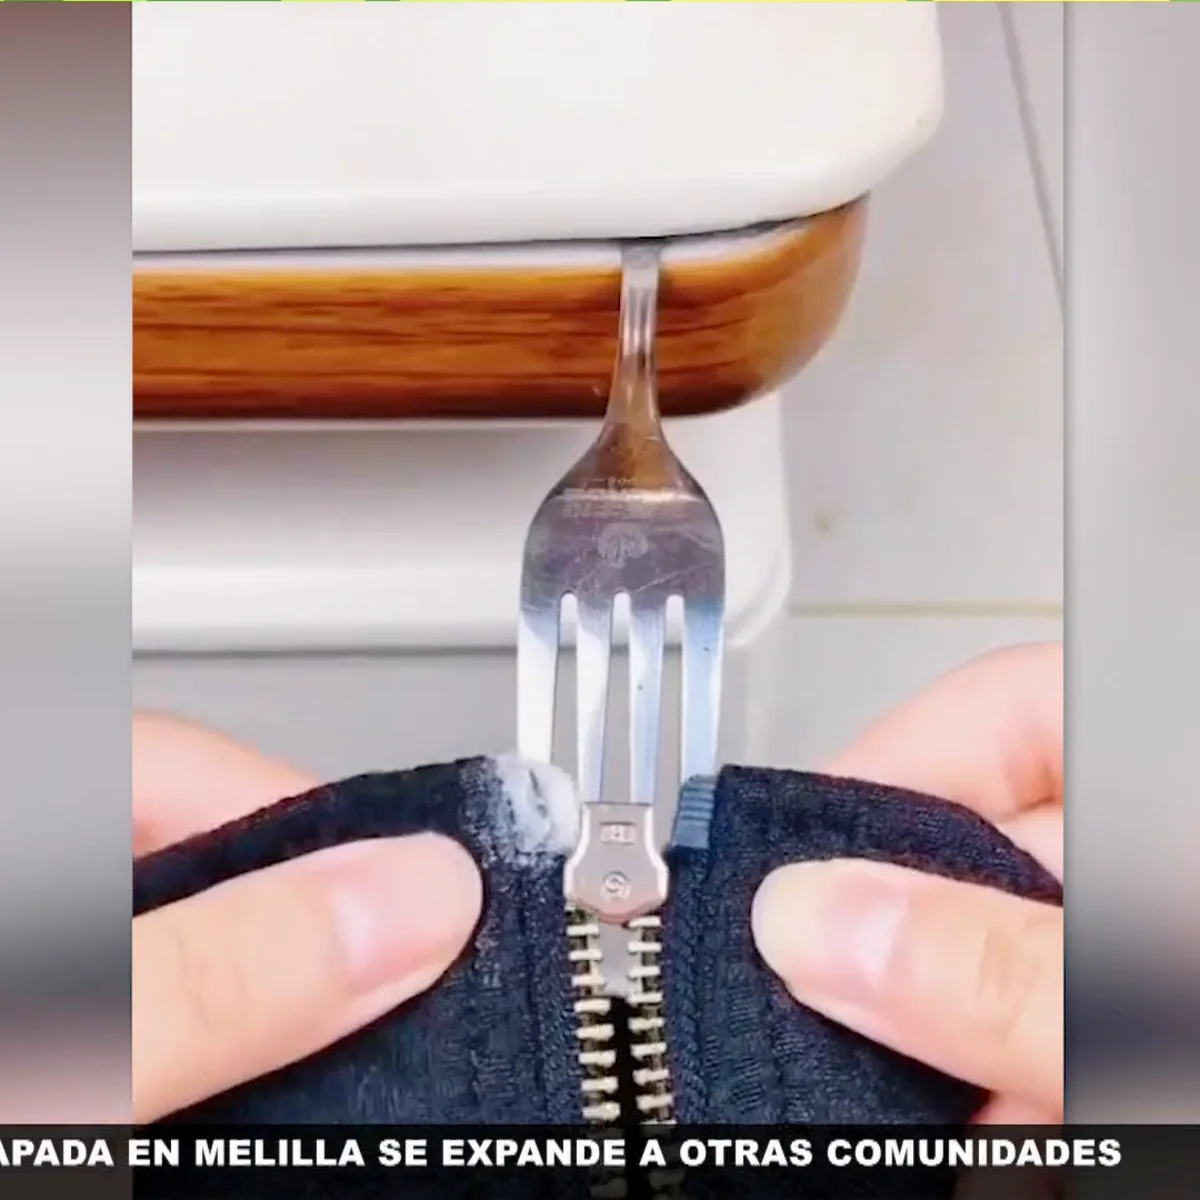 El truco definitivo para arreglar las cremalleras: solo necesitas un tenedor